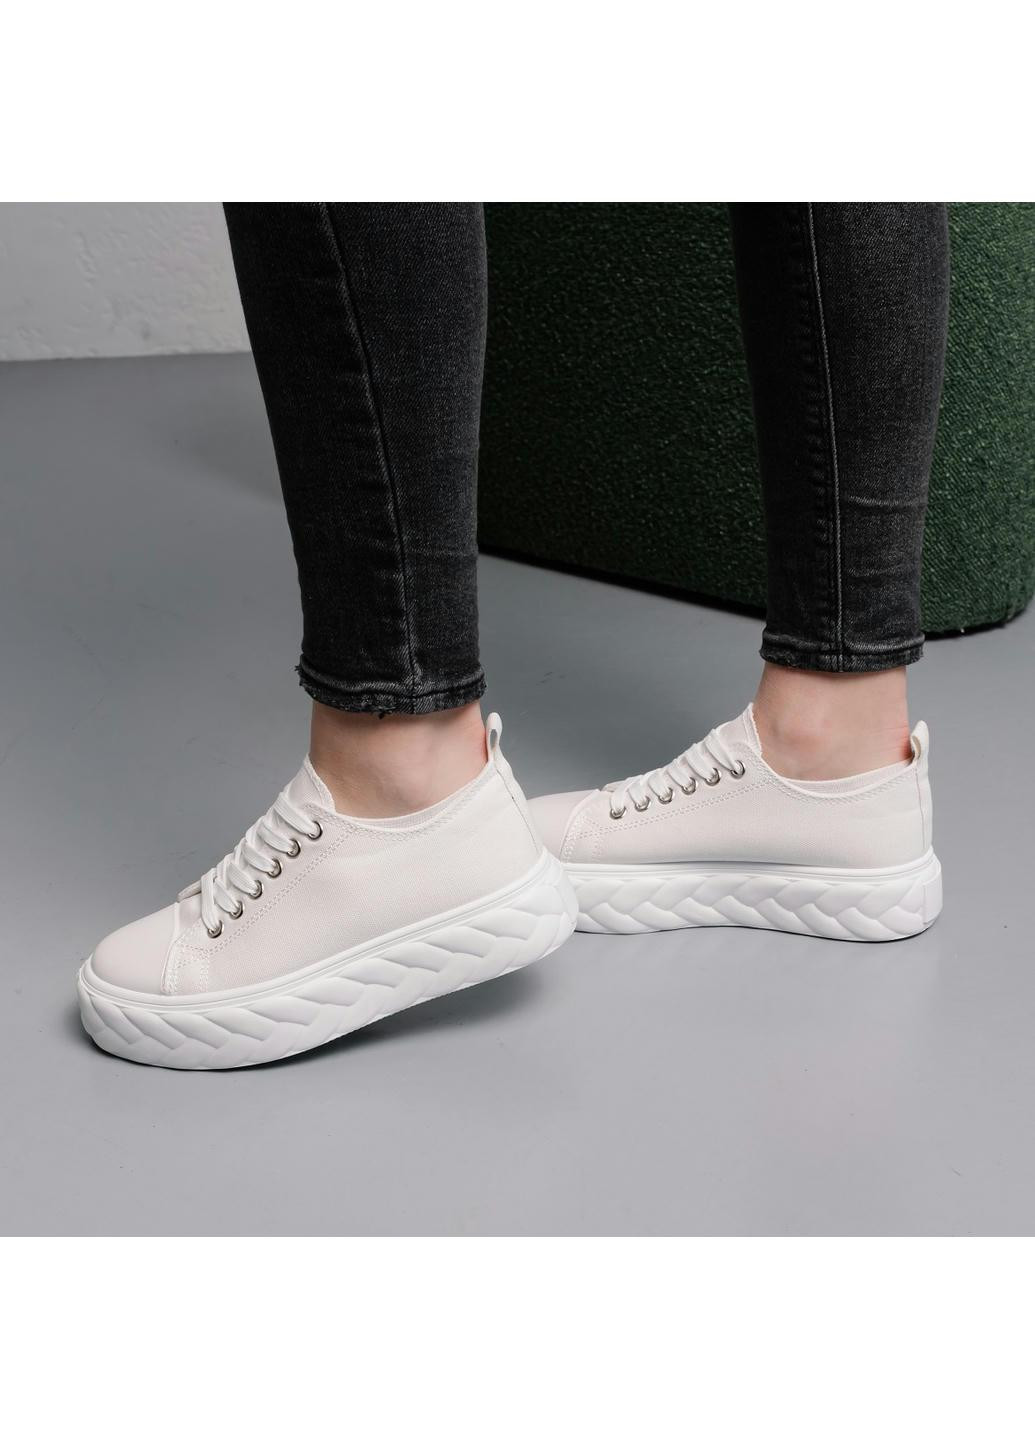 Белые демисезонные женские кроссовки giselle 3987 235 белый Fashion